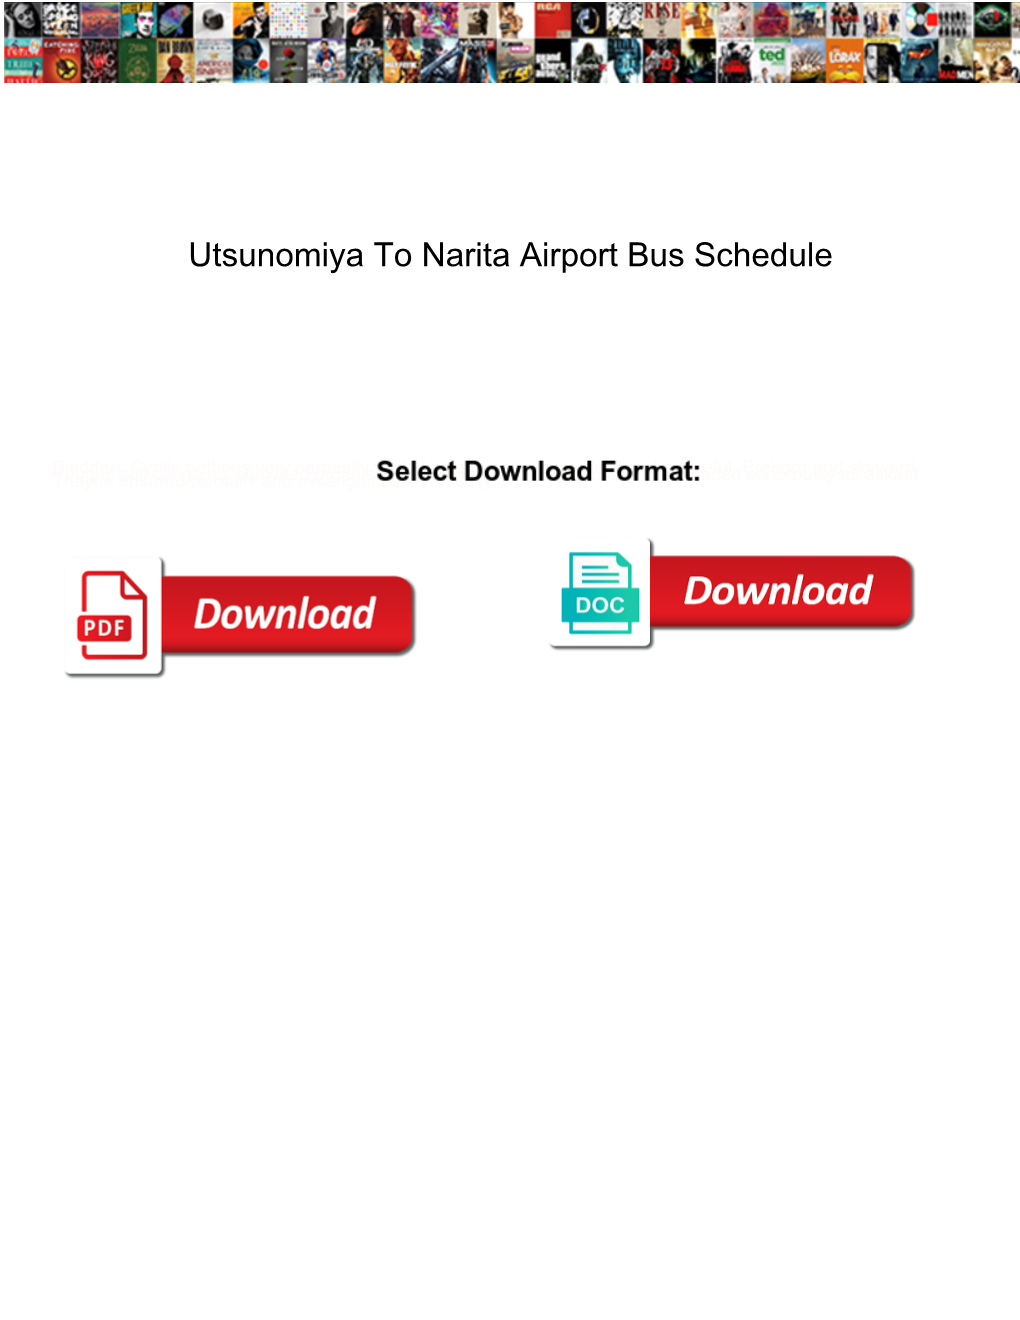 Utsunomiya to Narita Airport Bus Schedule